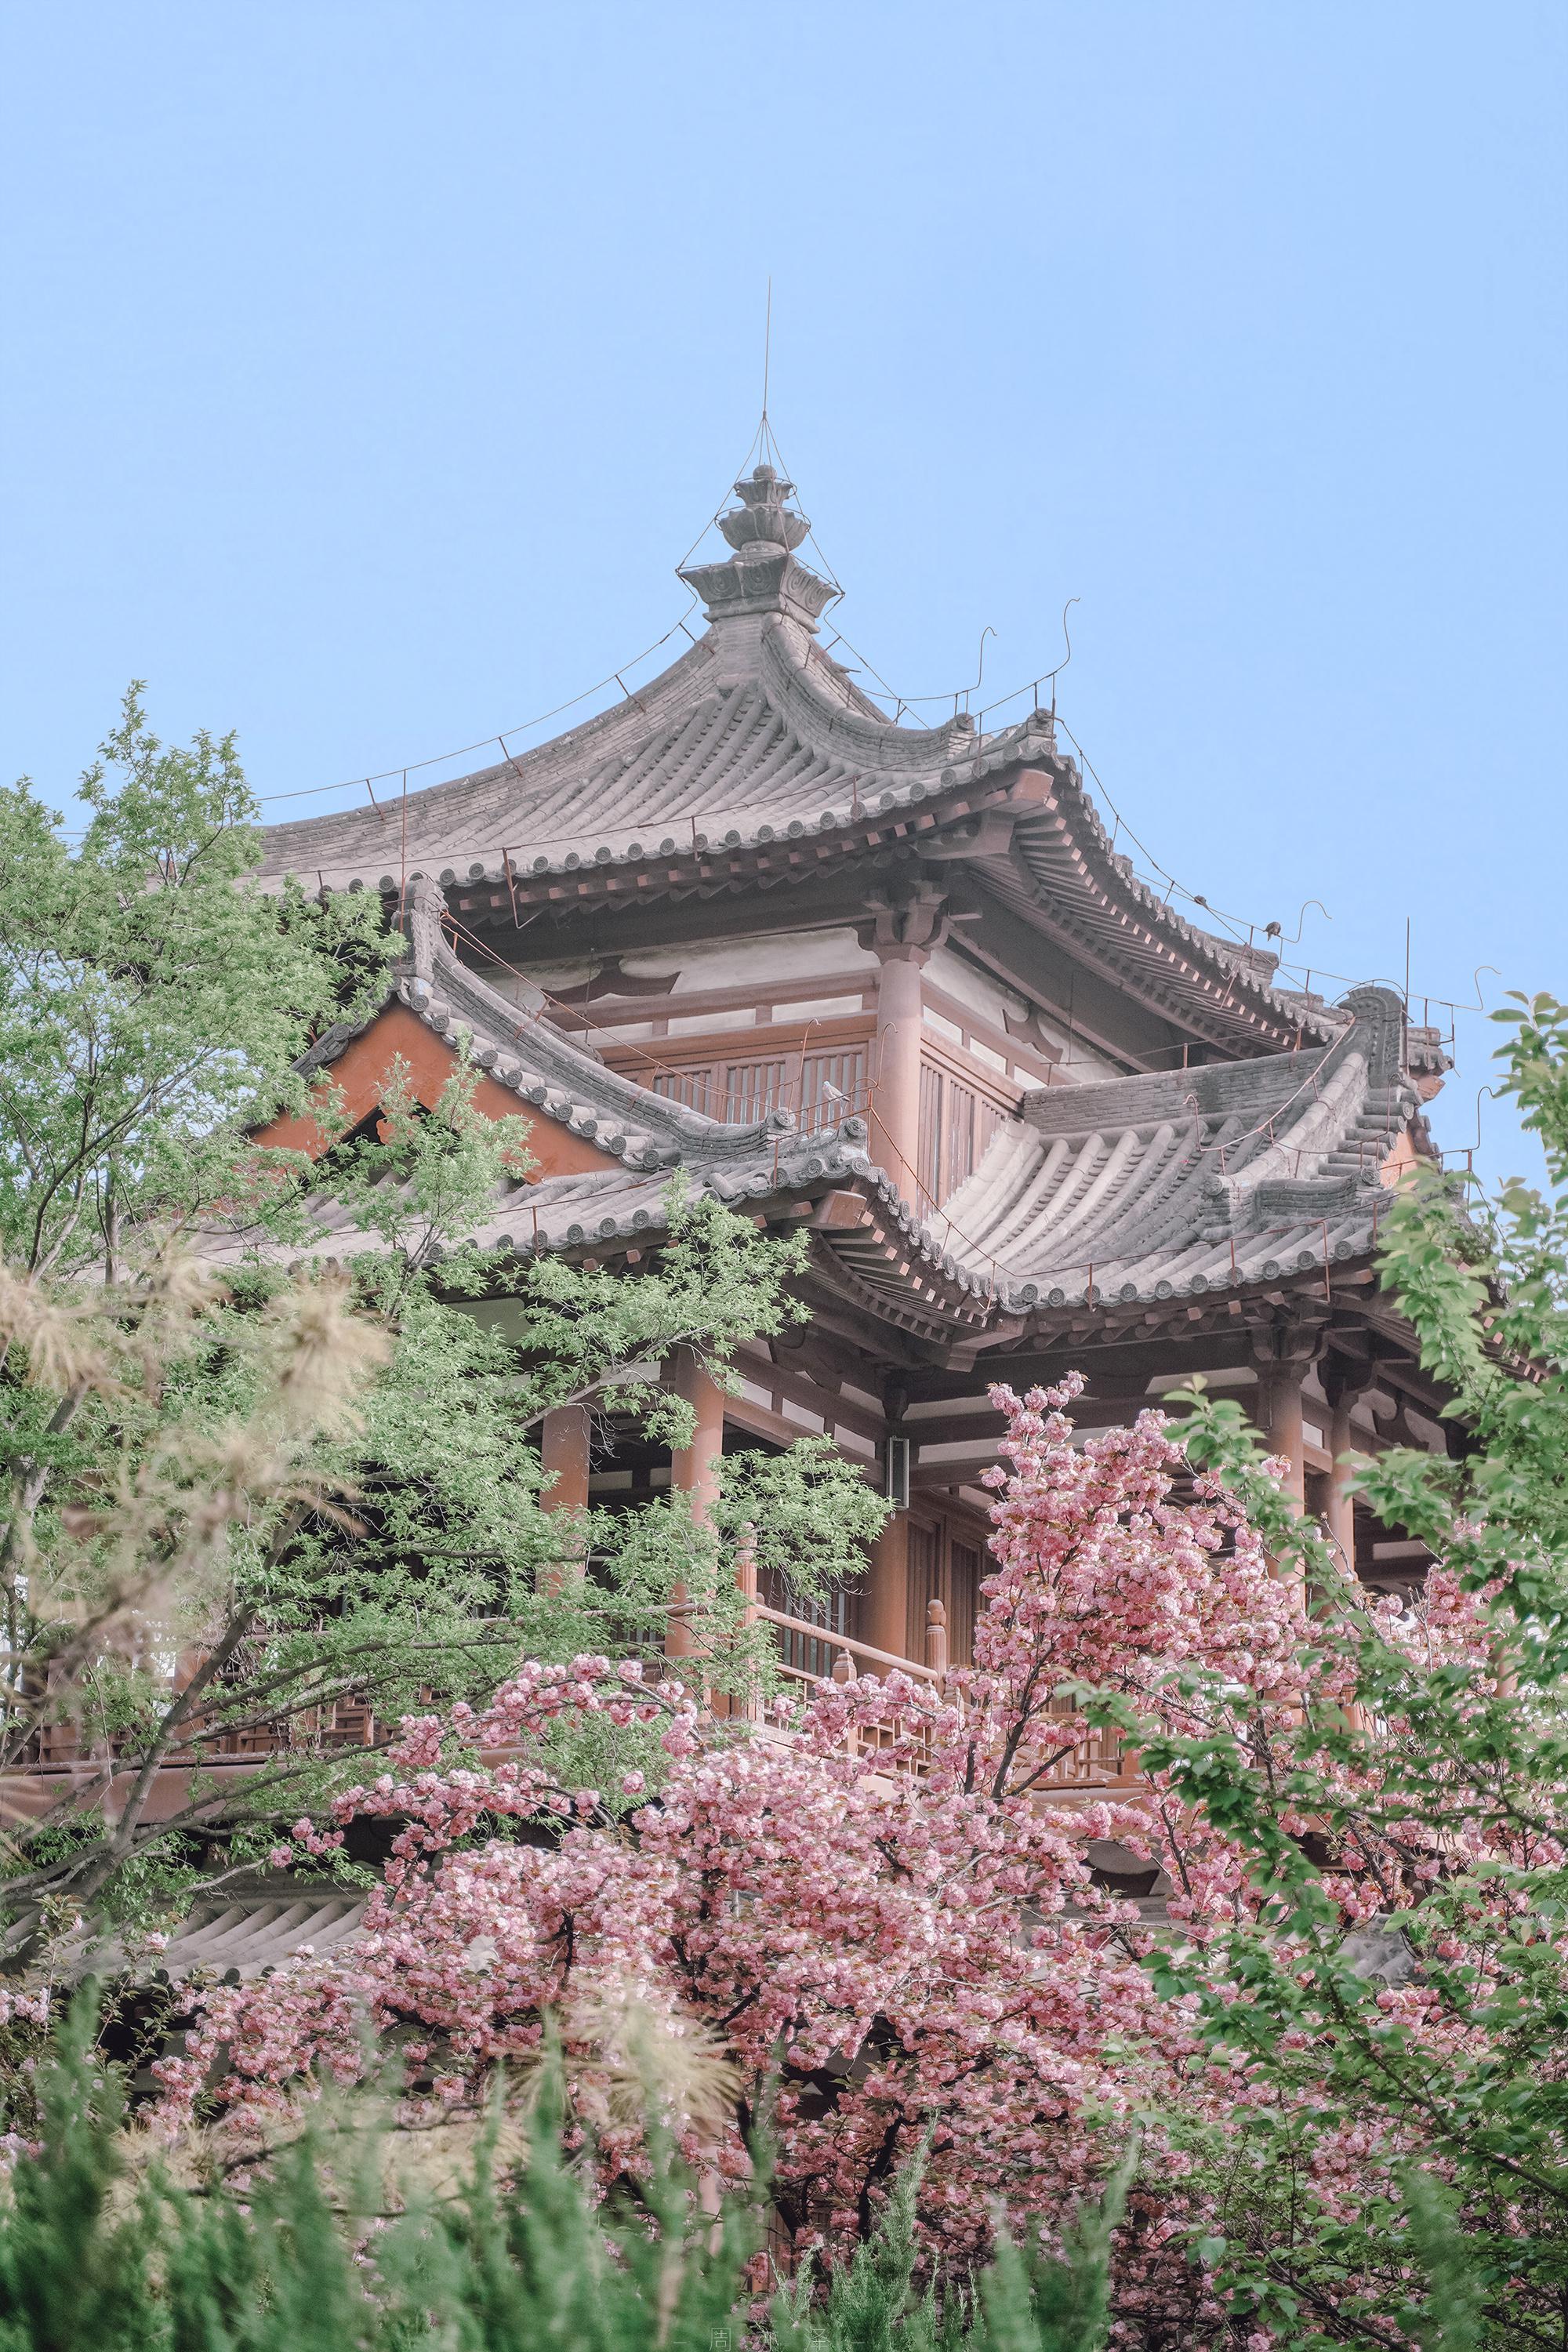 西安青龙寺以樱花种类众多闻名,3月,樱花盛开,美不胜收